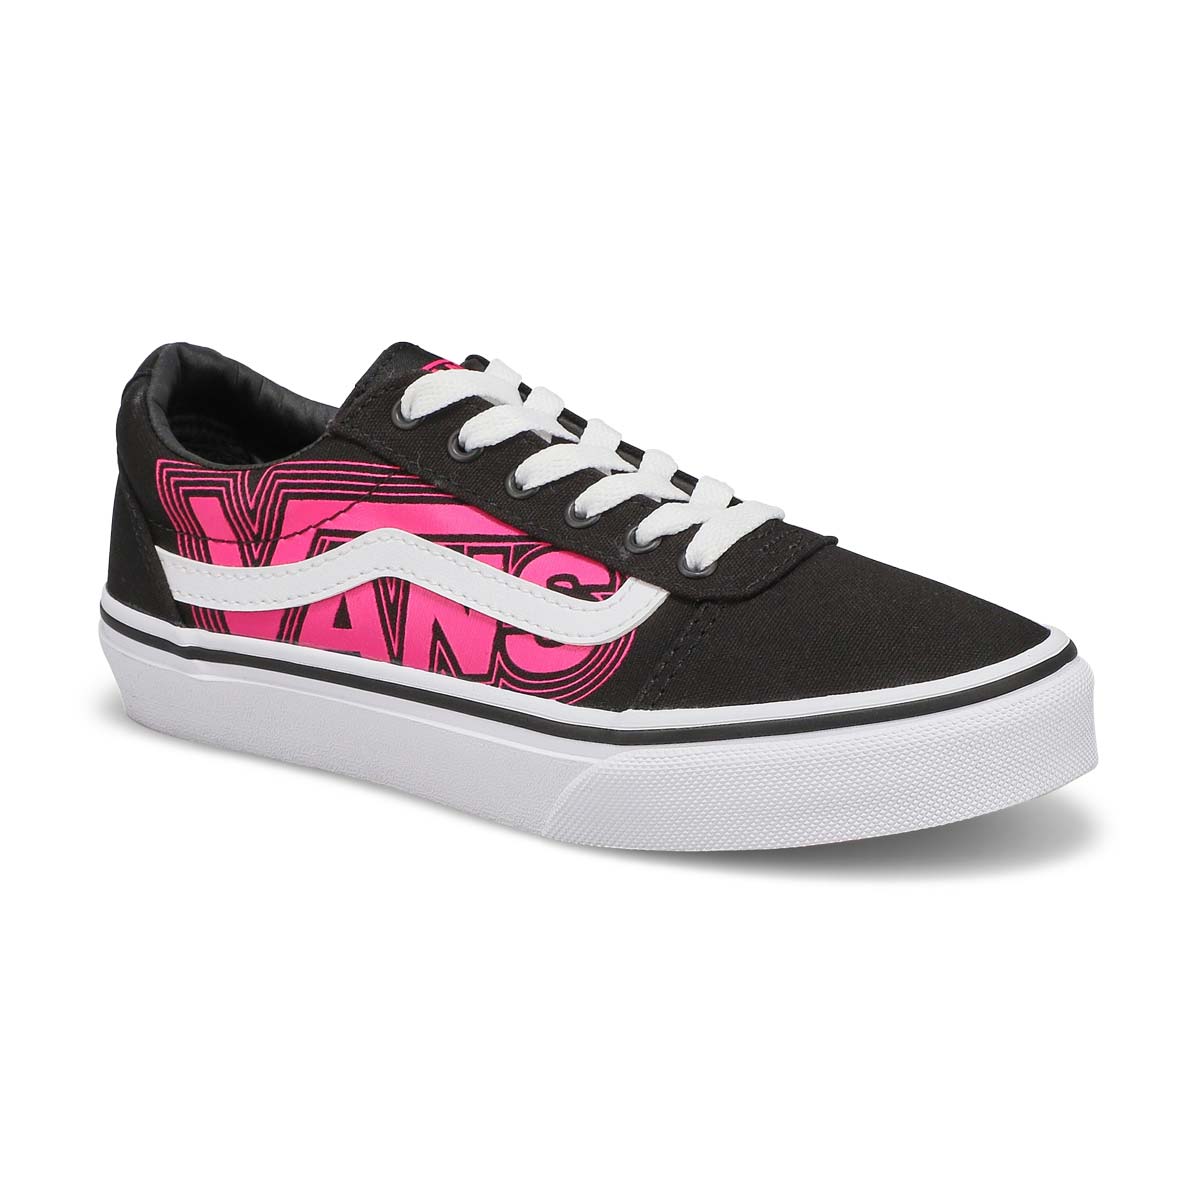 Kds Ward Glow Sneaker - Neon Pink/Black